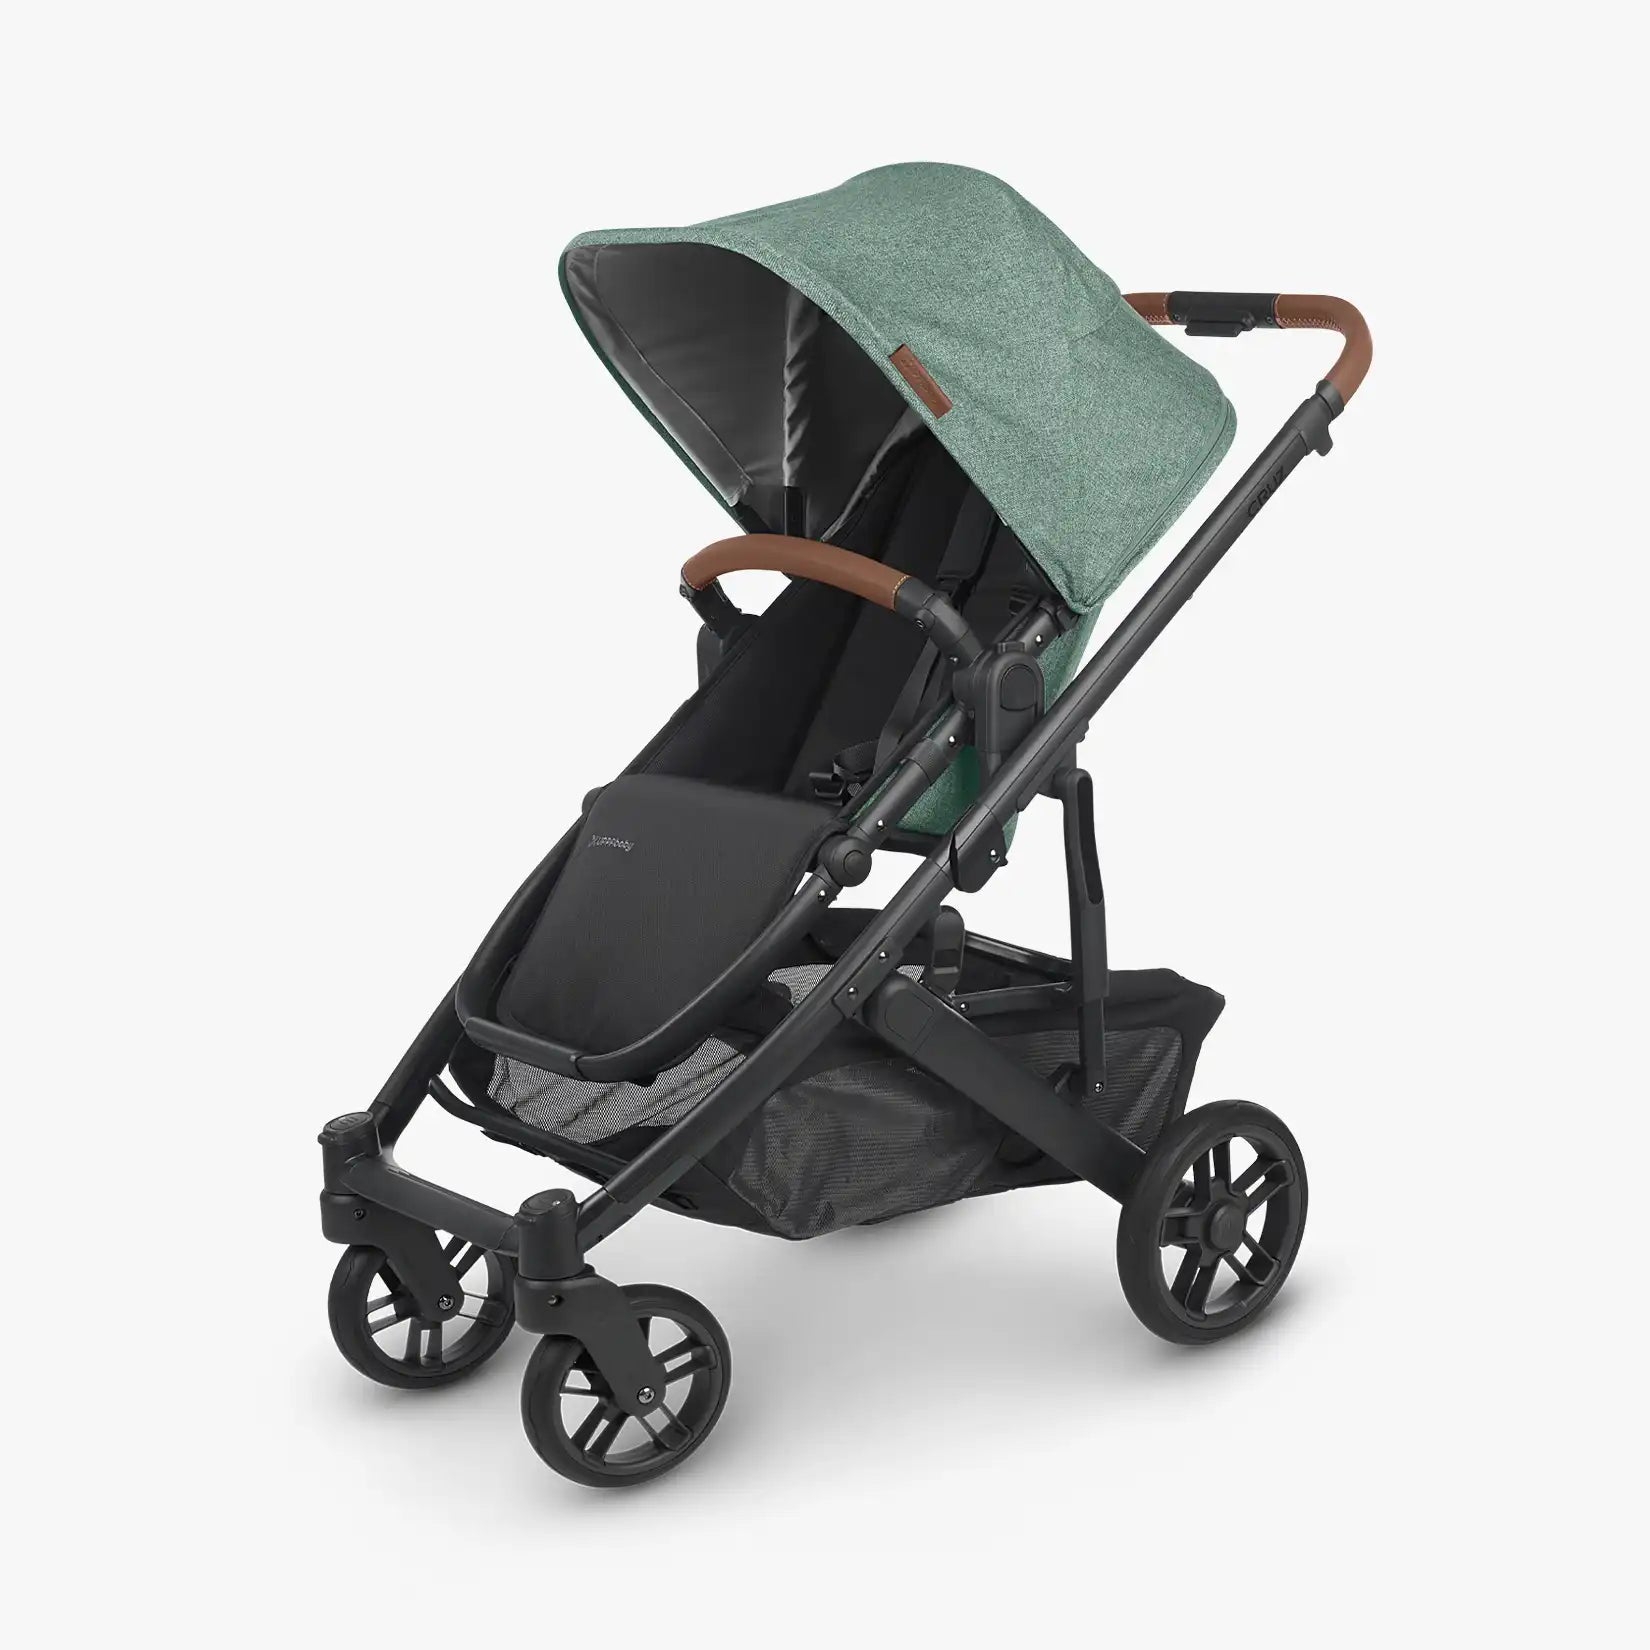 UPPAbaby CRUZ V2 Stroller - ANB Baby -810030093640$500 - $1000